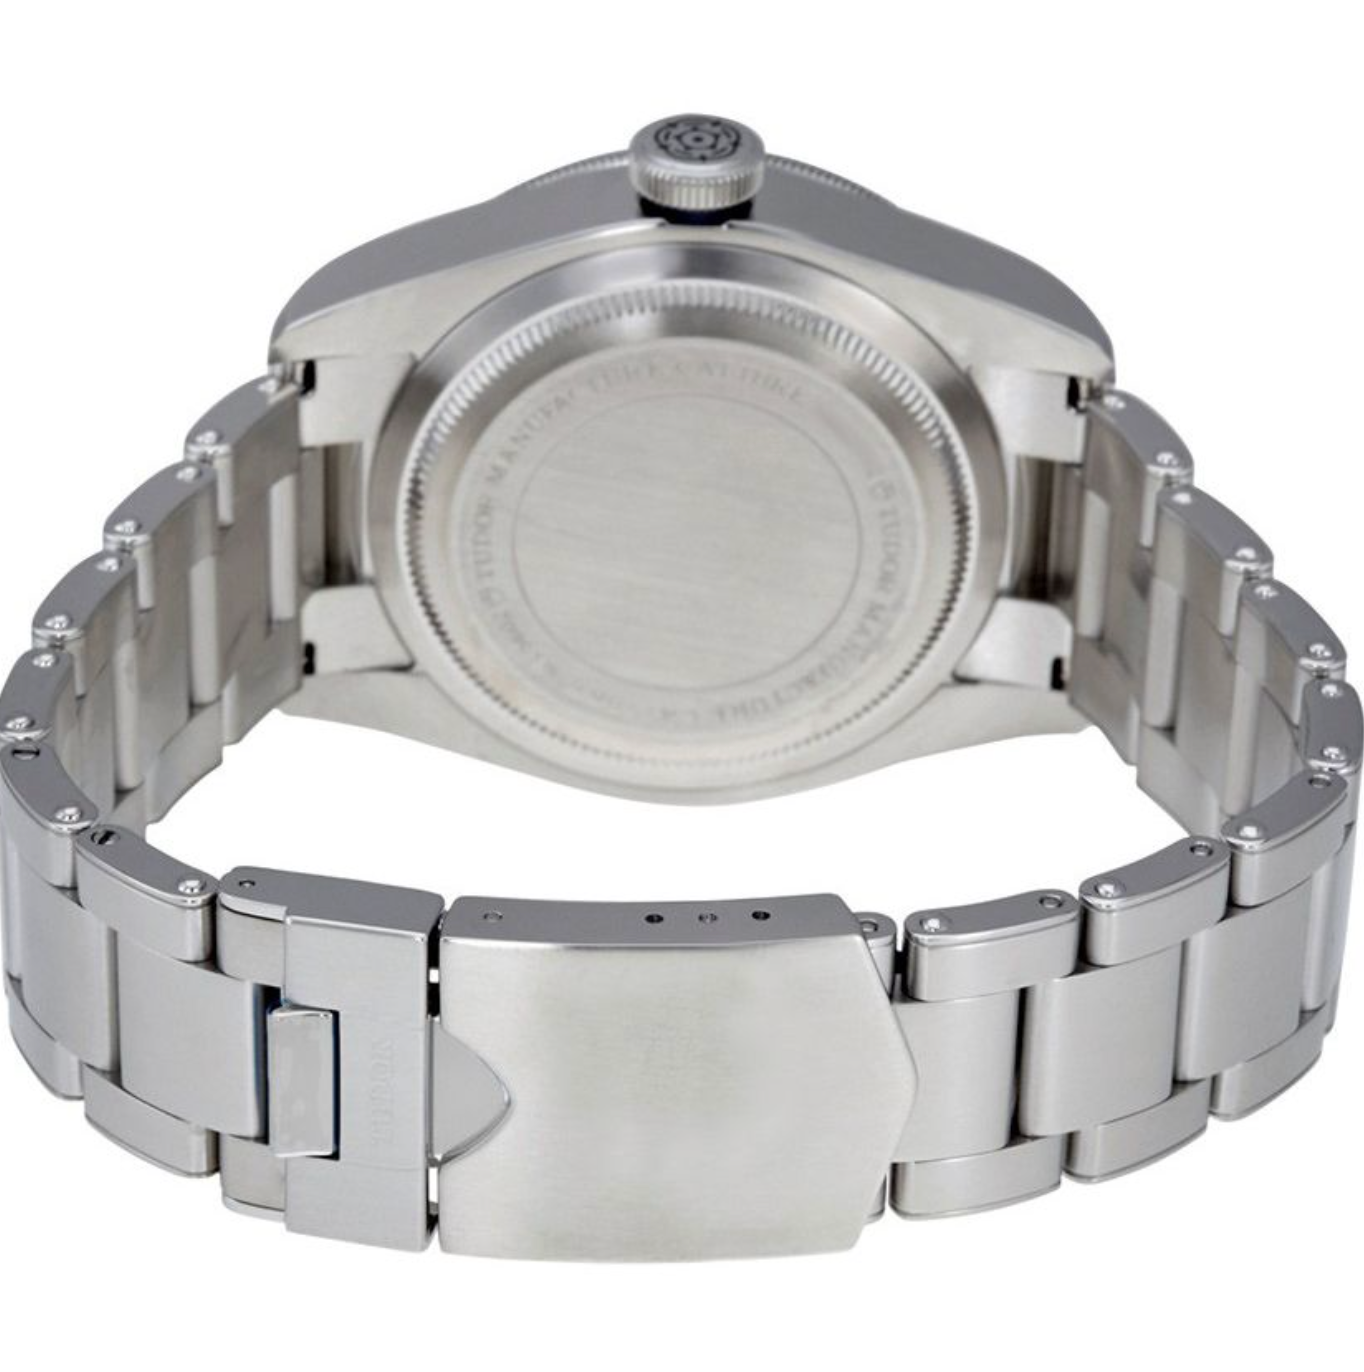 Tudor Heritage Black Bay 41mm Steel Men’s Watch M79230B-0008 - IP Empire Replica Watches